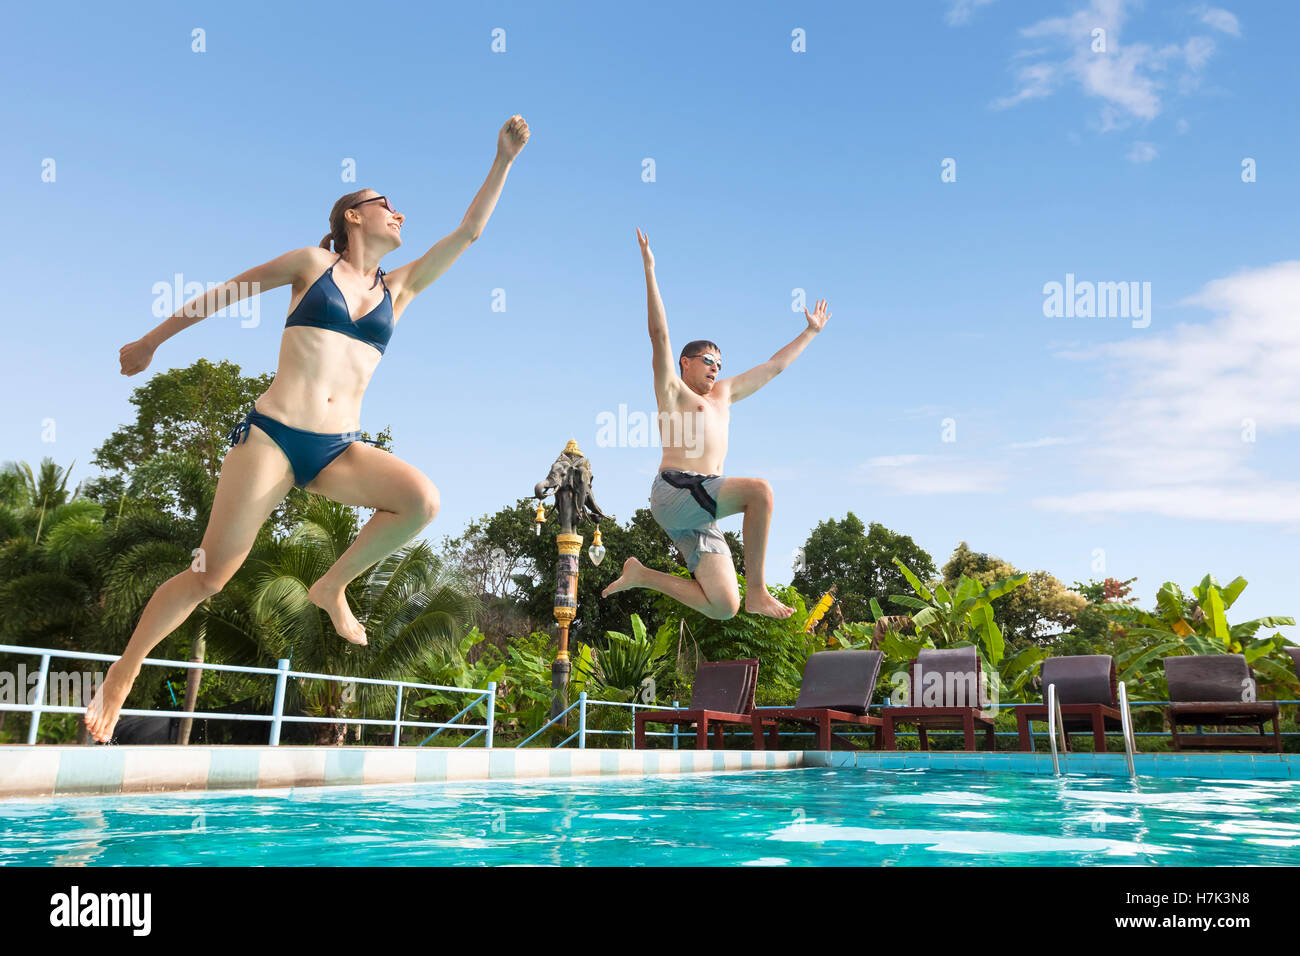 Zwei Freunde genießen Sie einen Sprung in den Pool in einem tropischen Hotelresort - Konzept über glücklich lustige Sommerferien Stockfoto